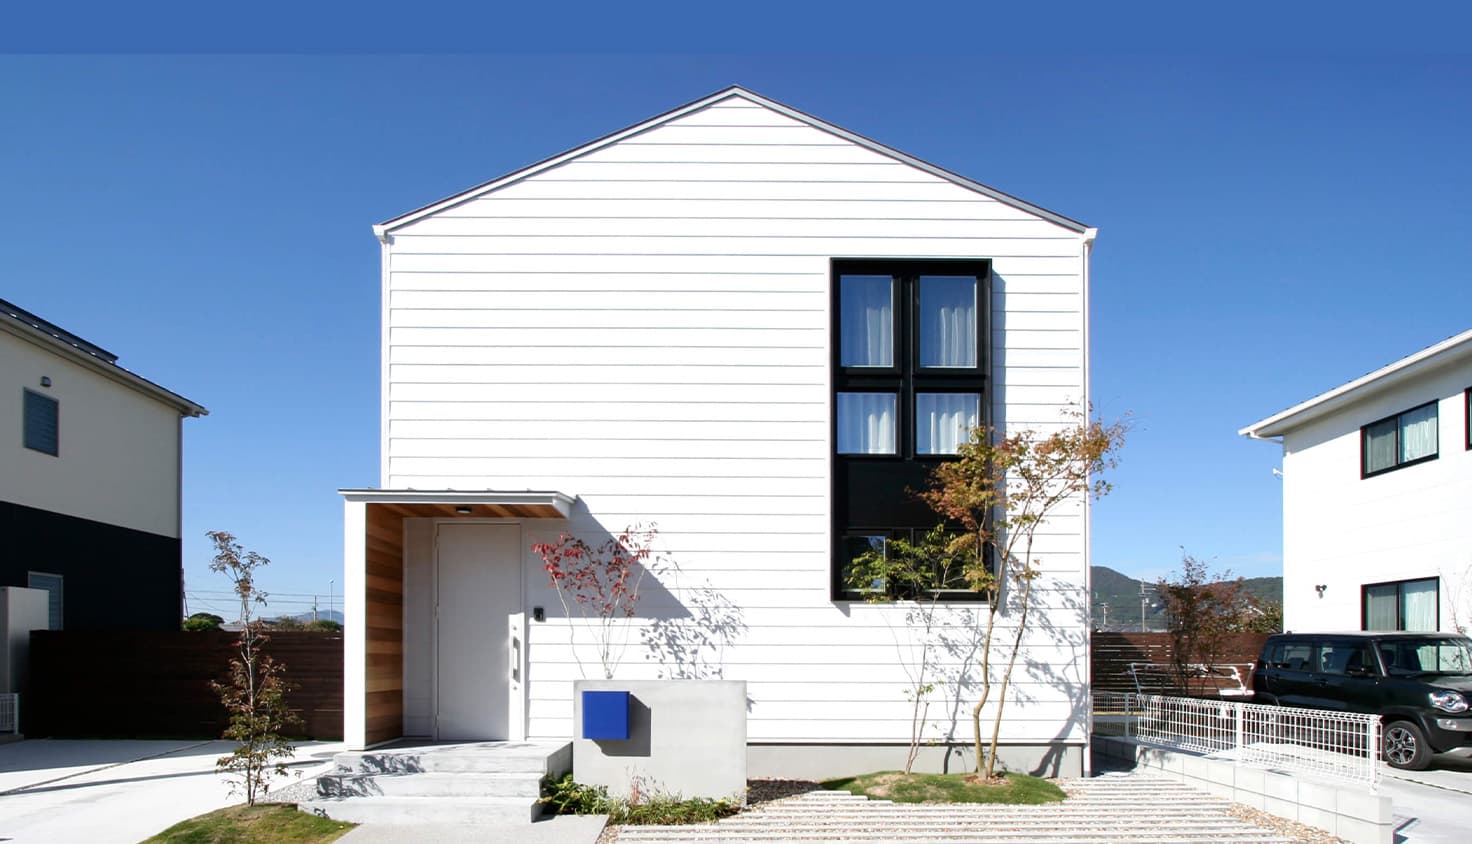 「プロも住みたいと思う家」超高性能デザイン規格住宅